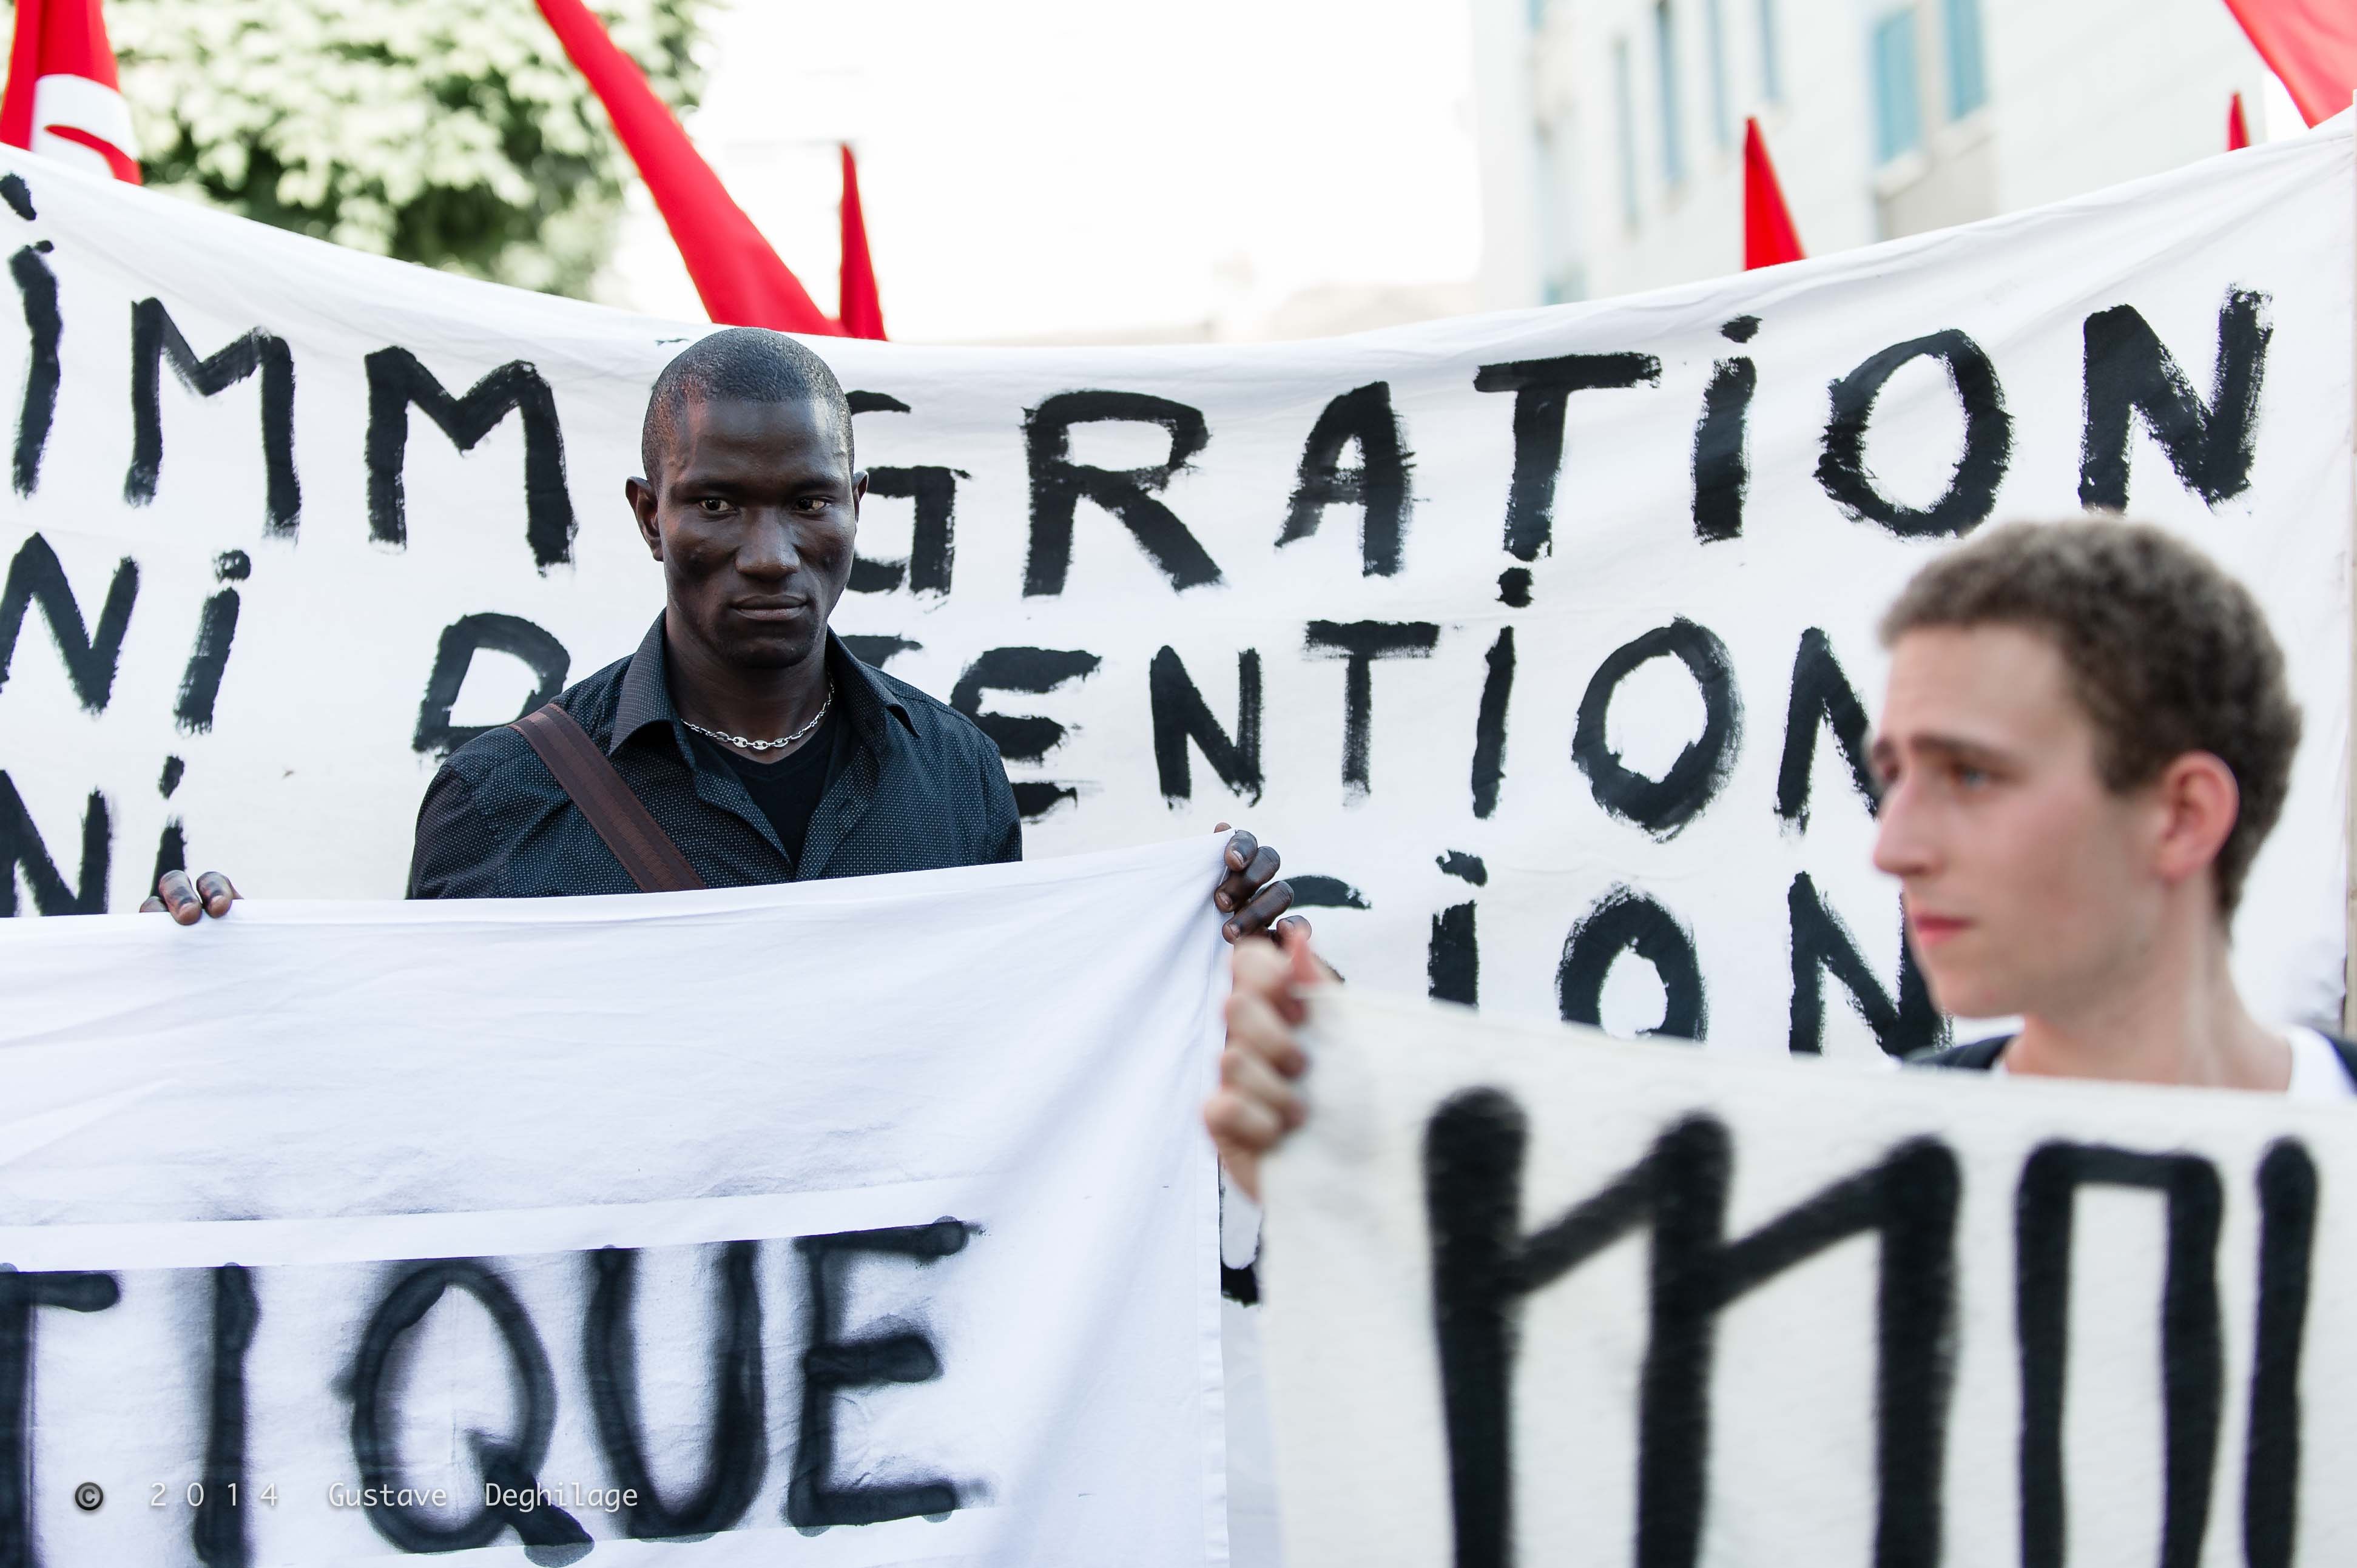 Manifestation pour le droit des migrant-e-s, Lausanne, 11 juin 2014 (Photos: Gustave Deghilage/Flickr, Public License